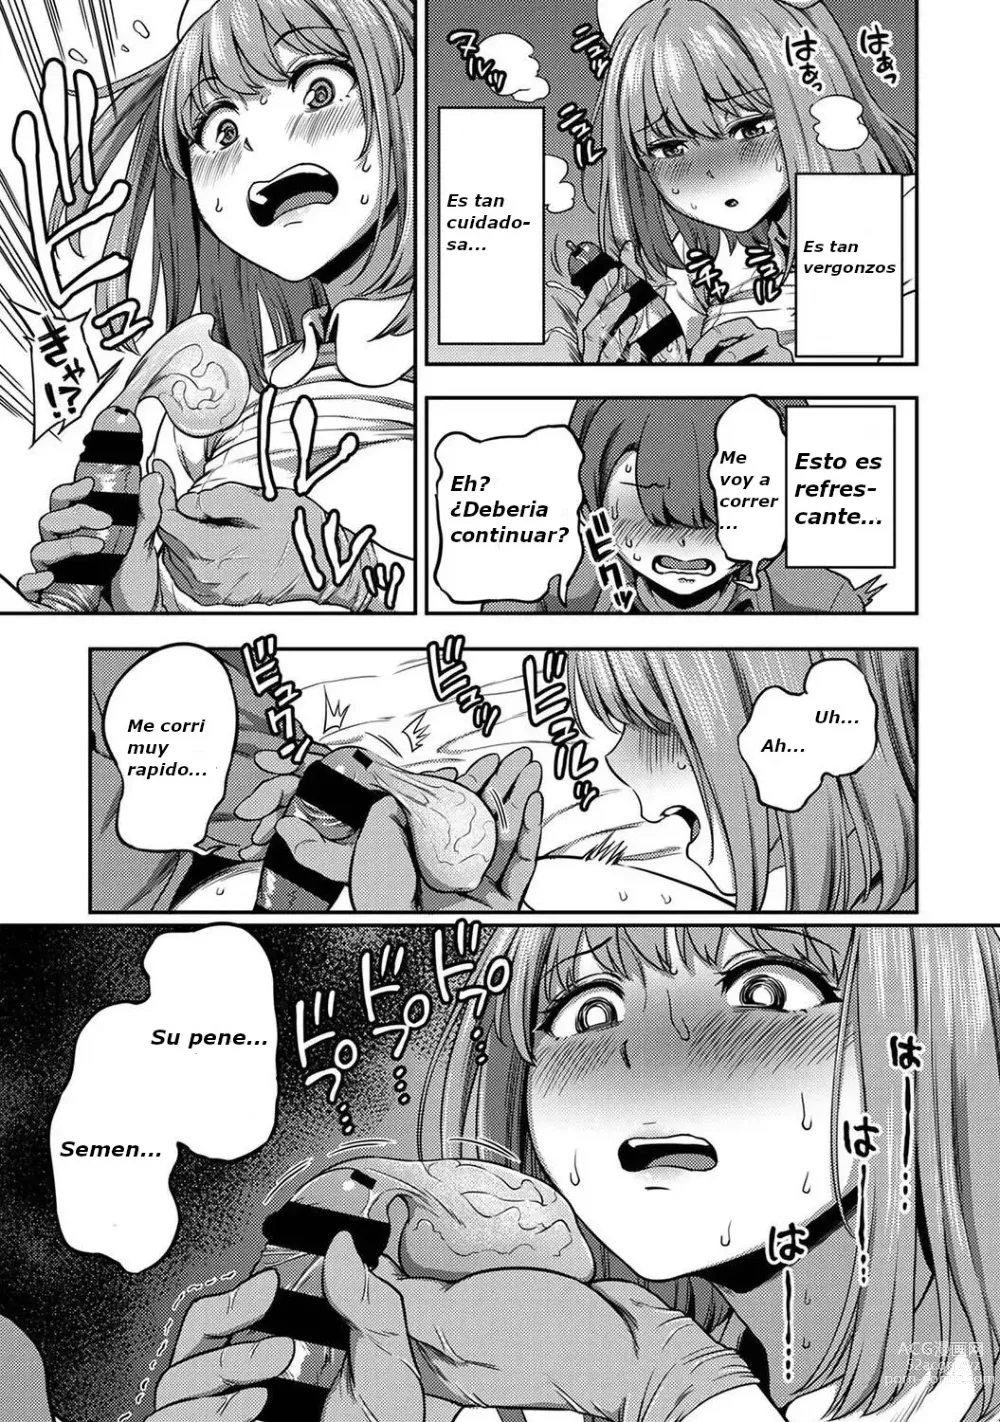 Page 6 of manga 